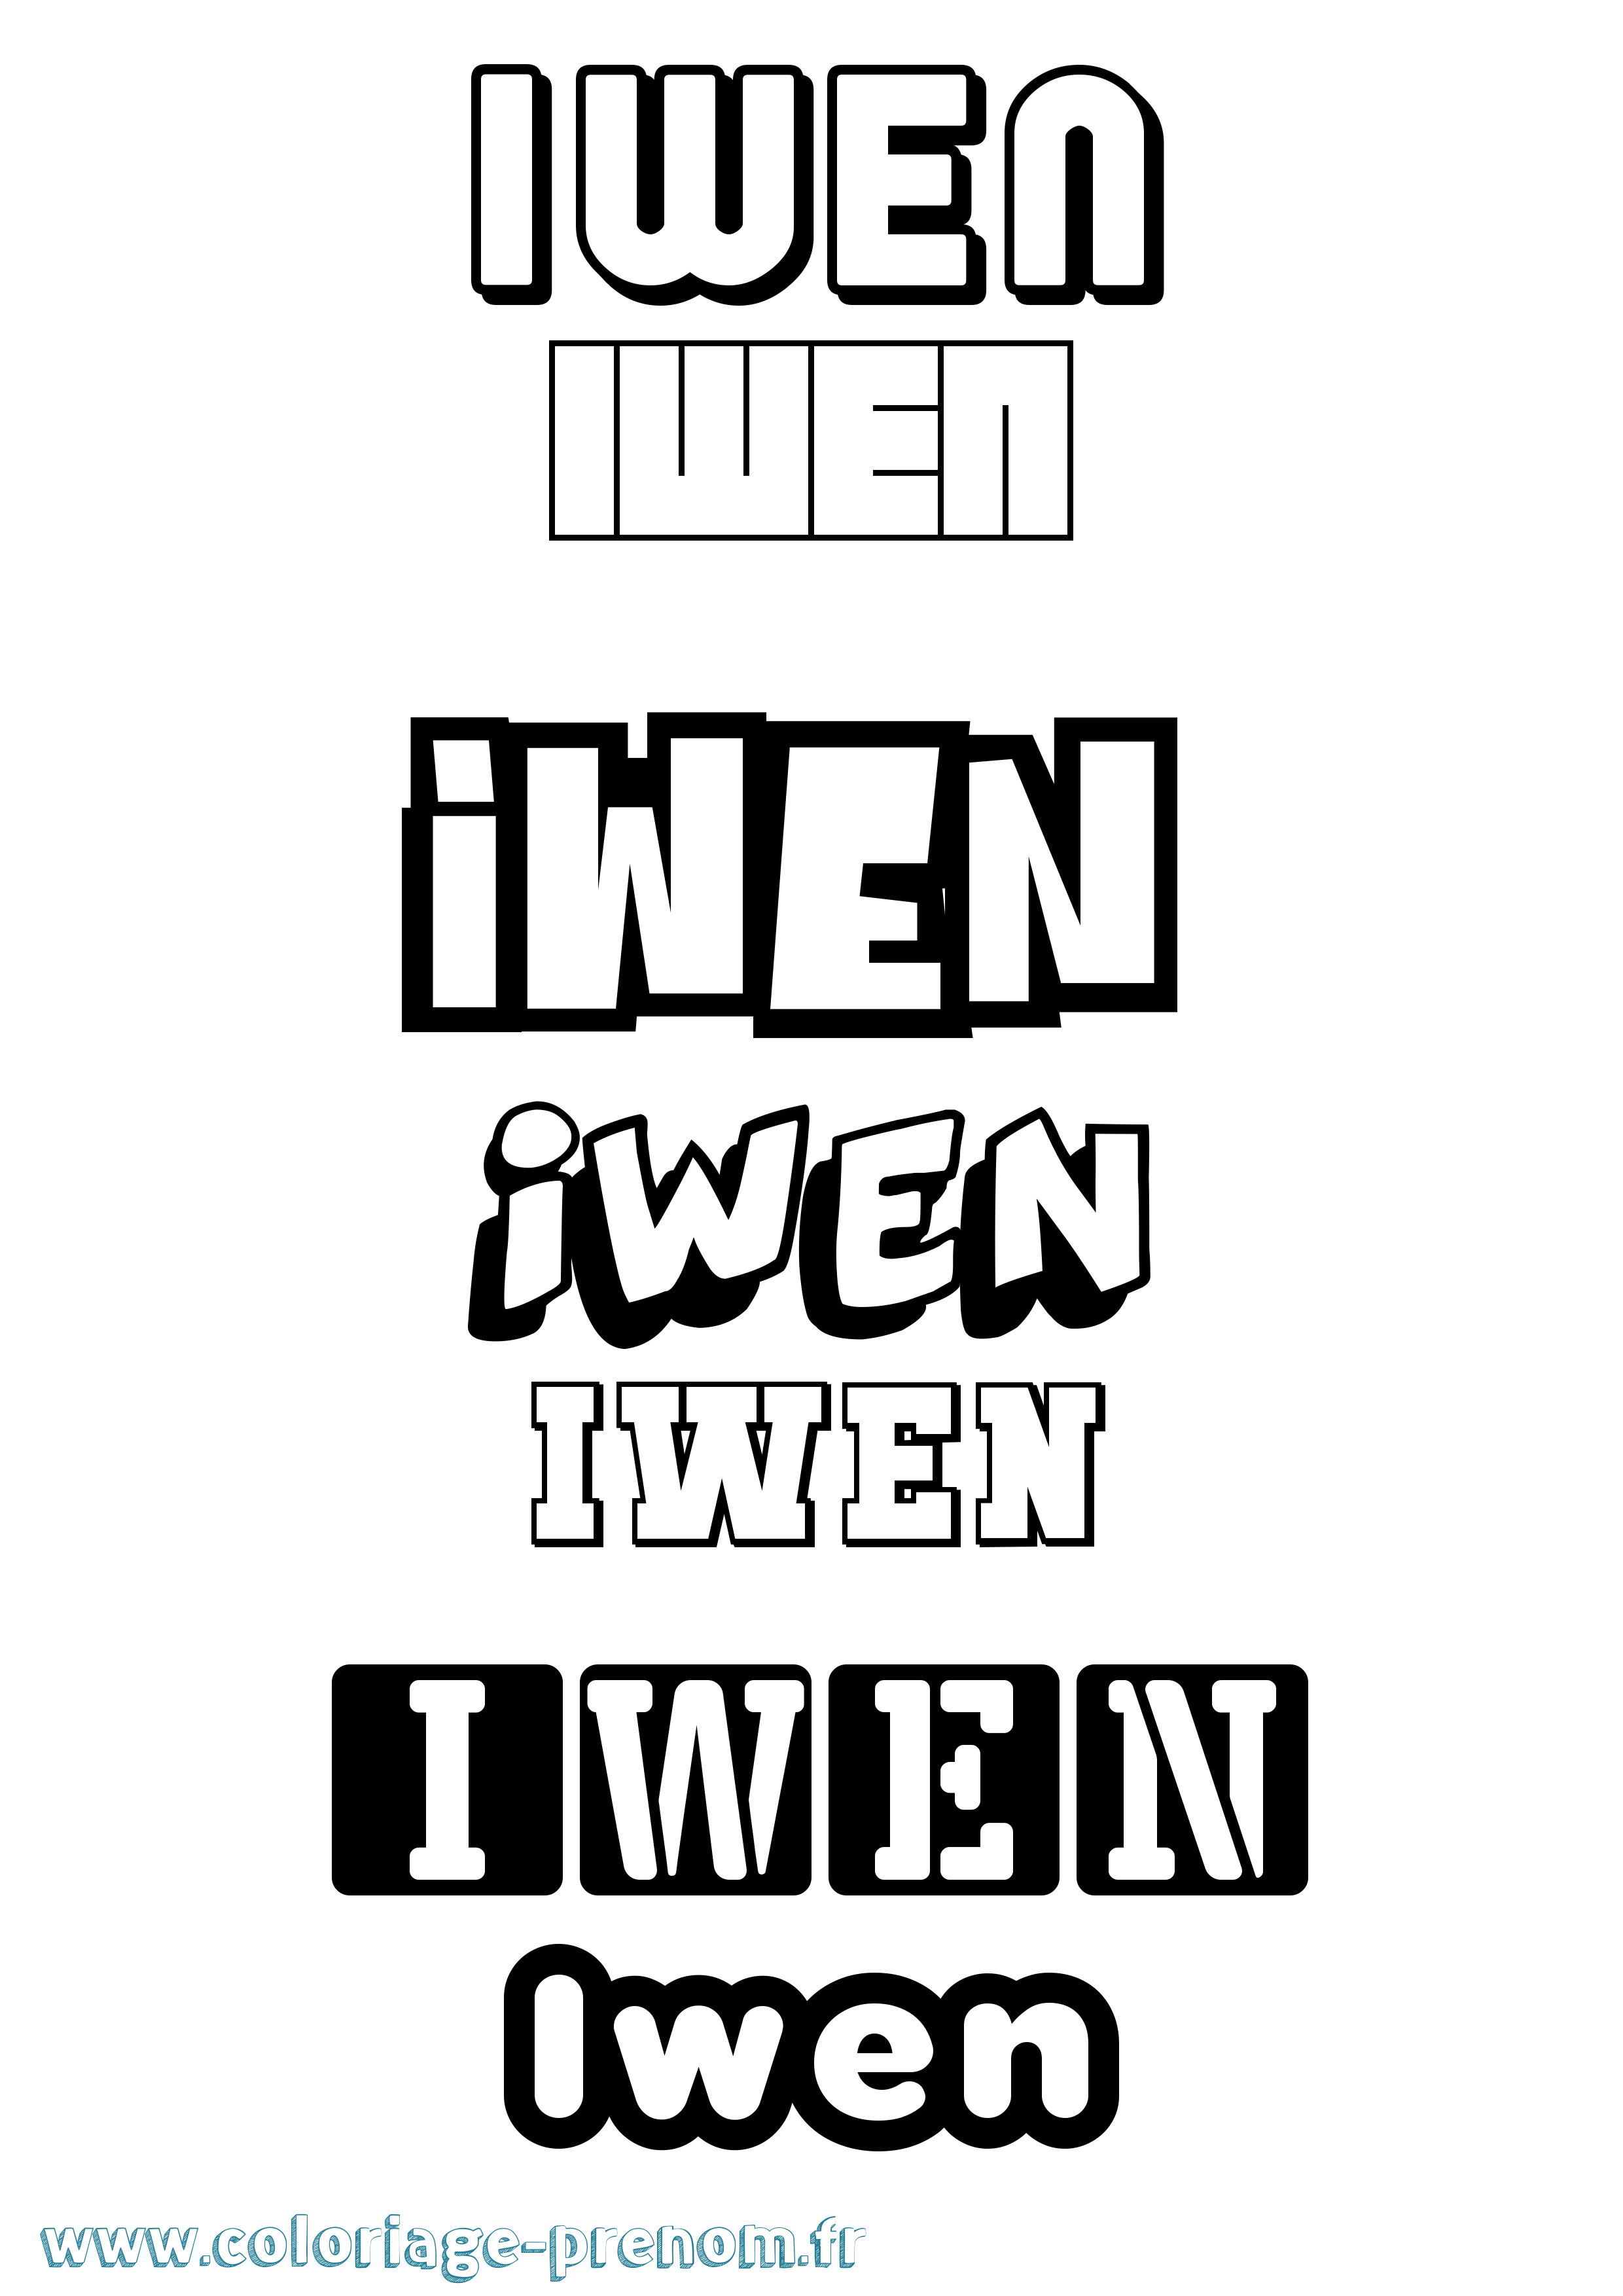 Coloriage prénom Iwen Simple